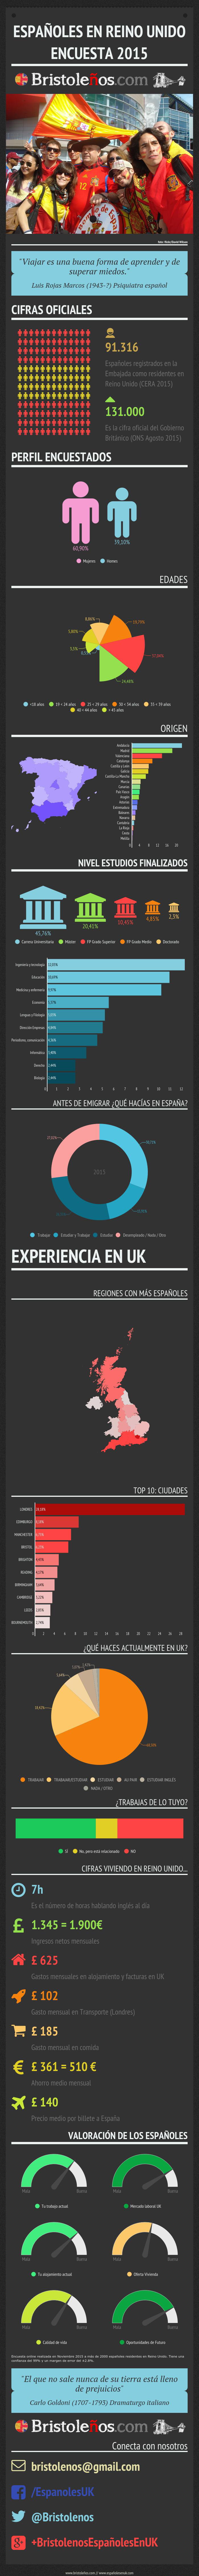 Infografía Encuesta Españoles en UK 2015